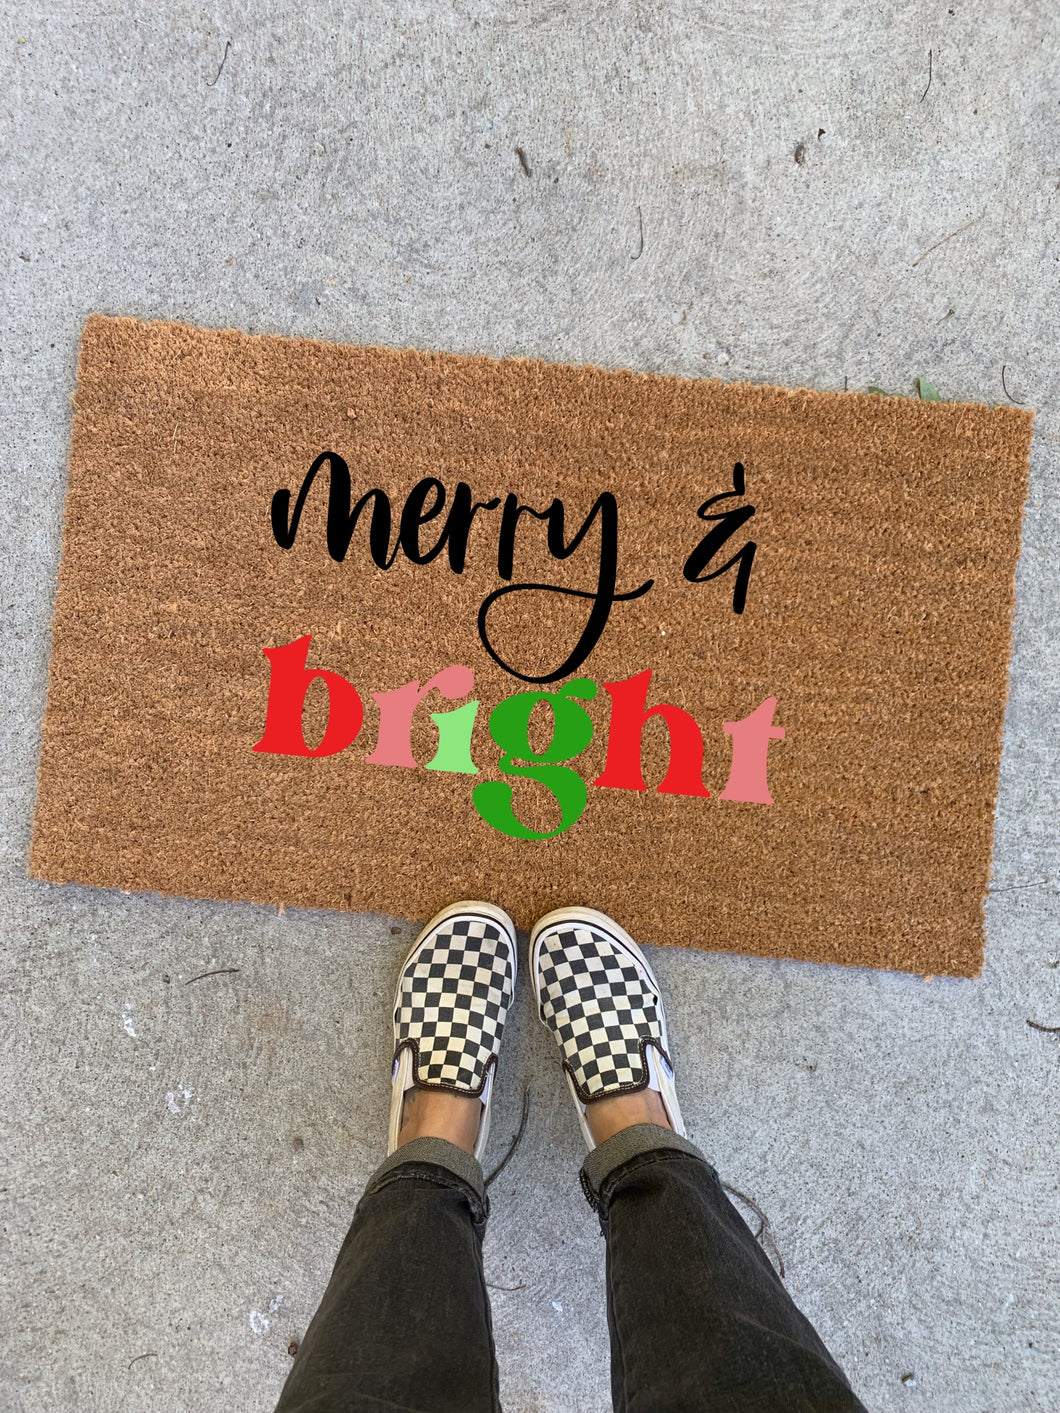 Merry & Bright doormat